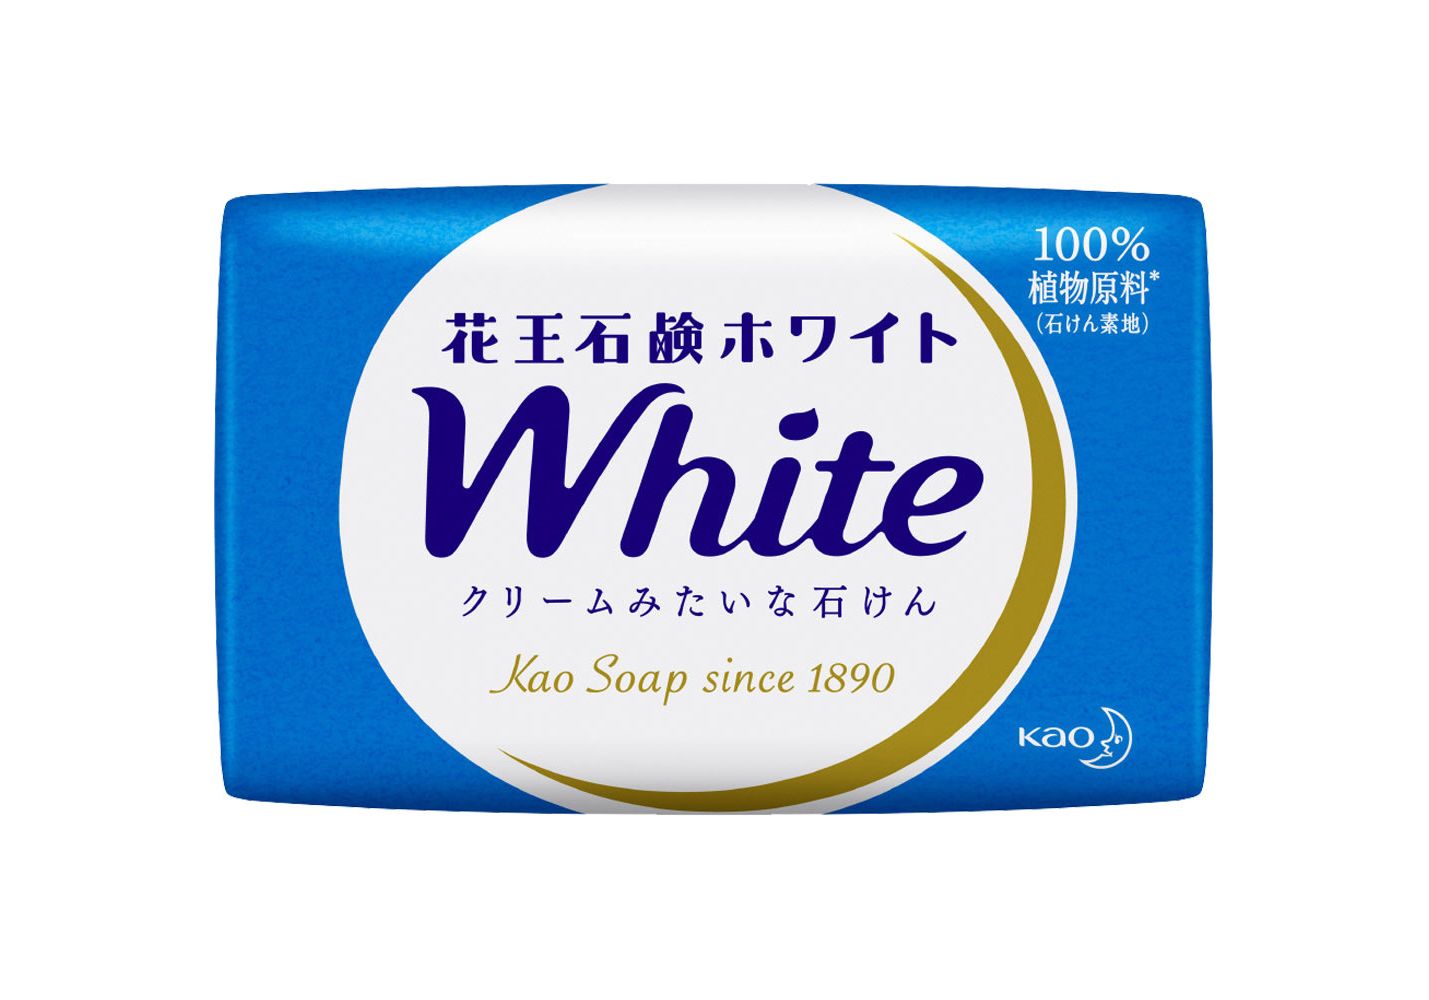 Увлажняющее крем-мыло для тела MegRhythm KAO White с ароматом белых цветов, 85г х 6шт. дом солнце мыло с ароматом розмарина мяты и лимона все важны 100